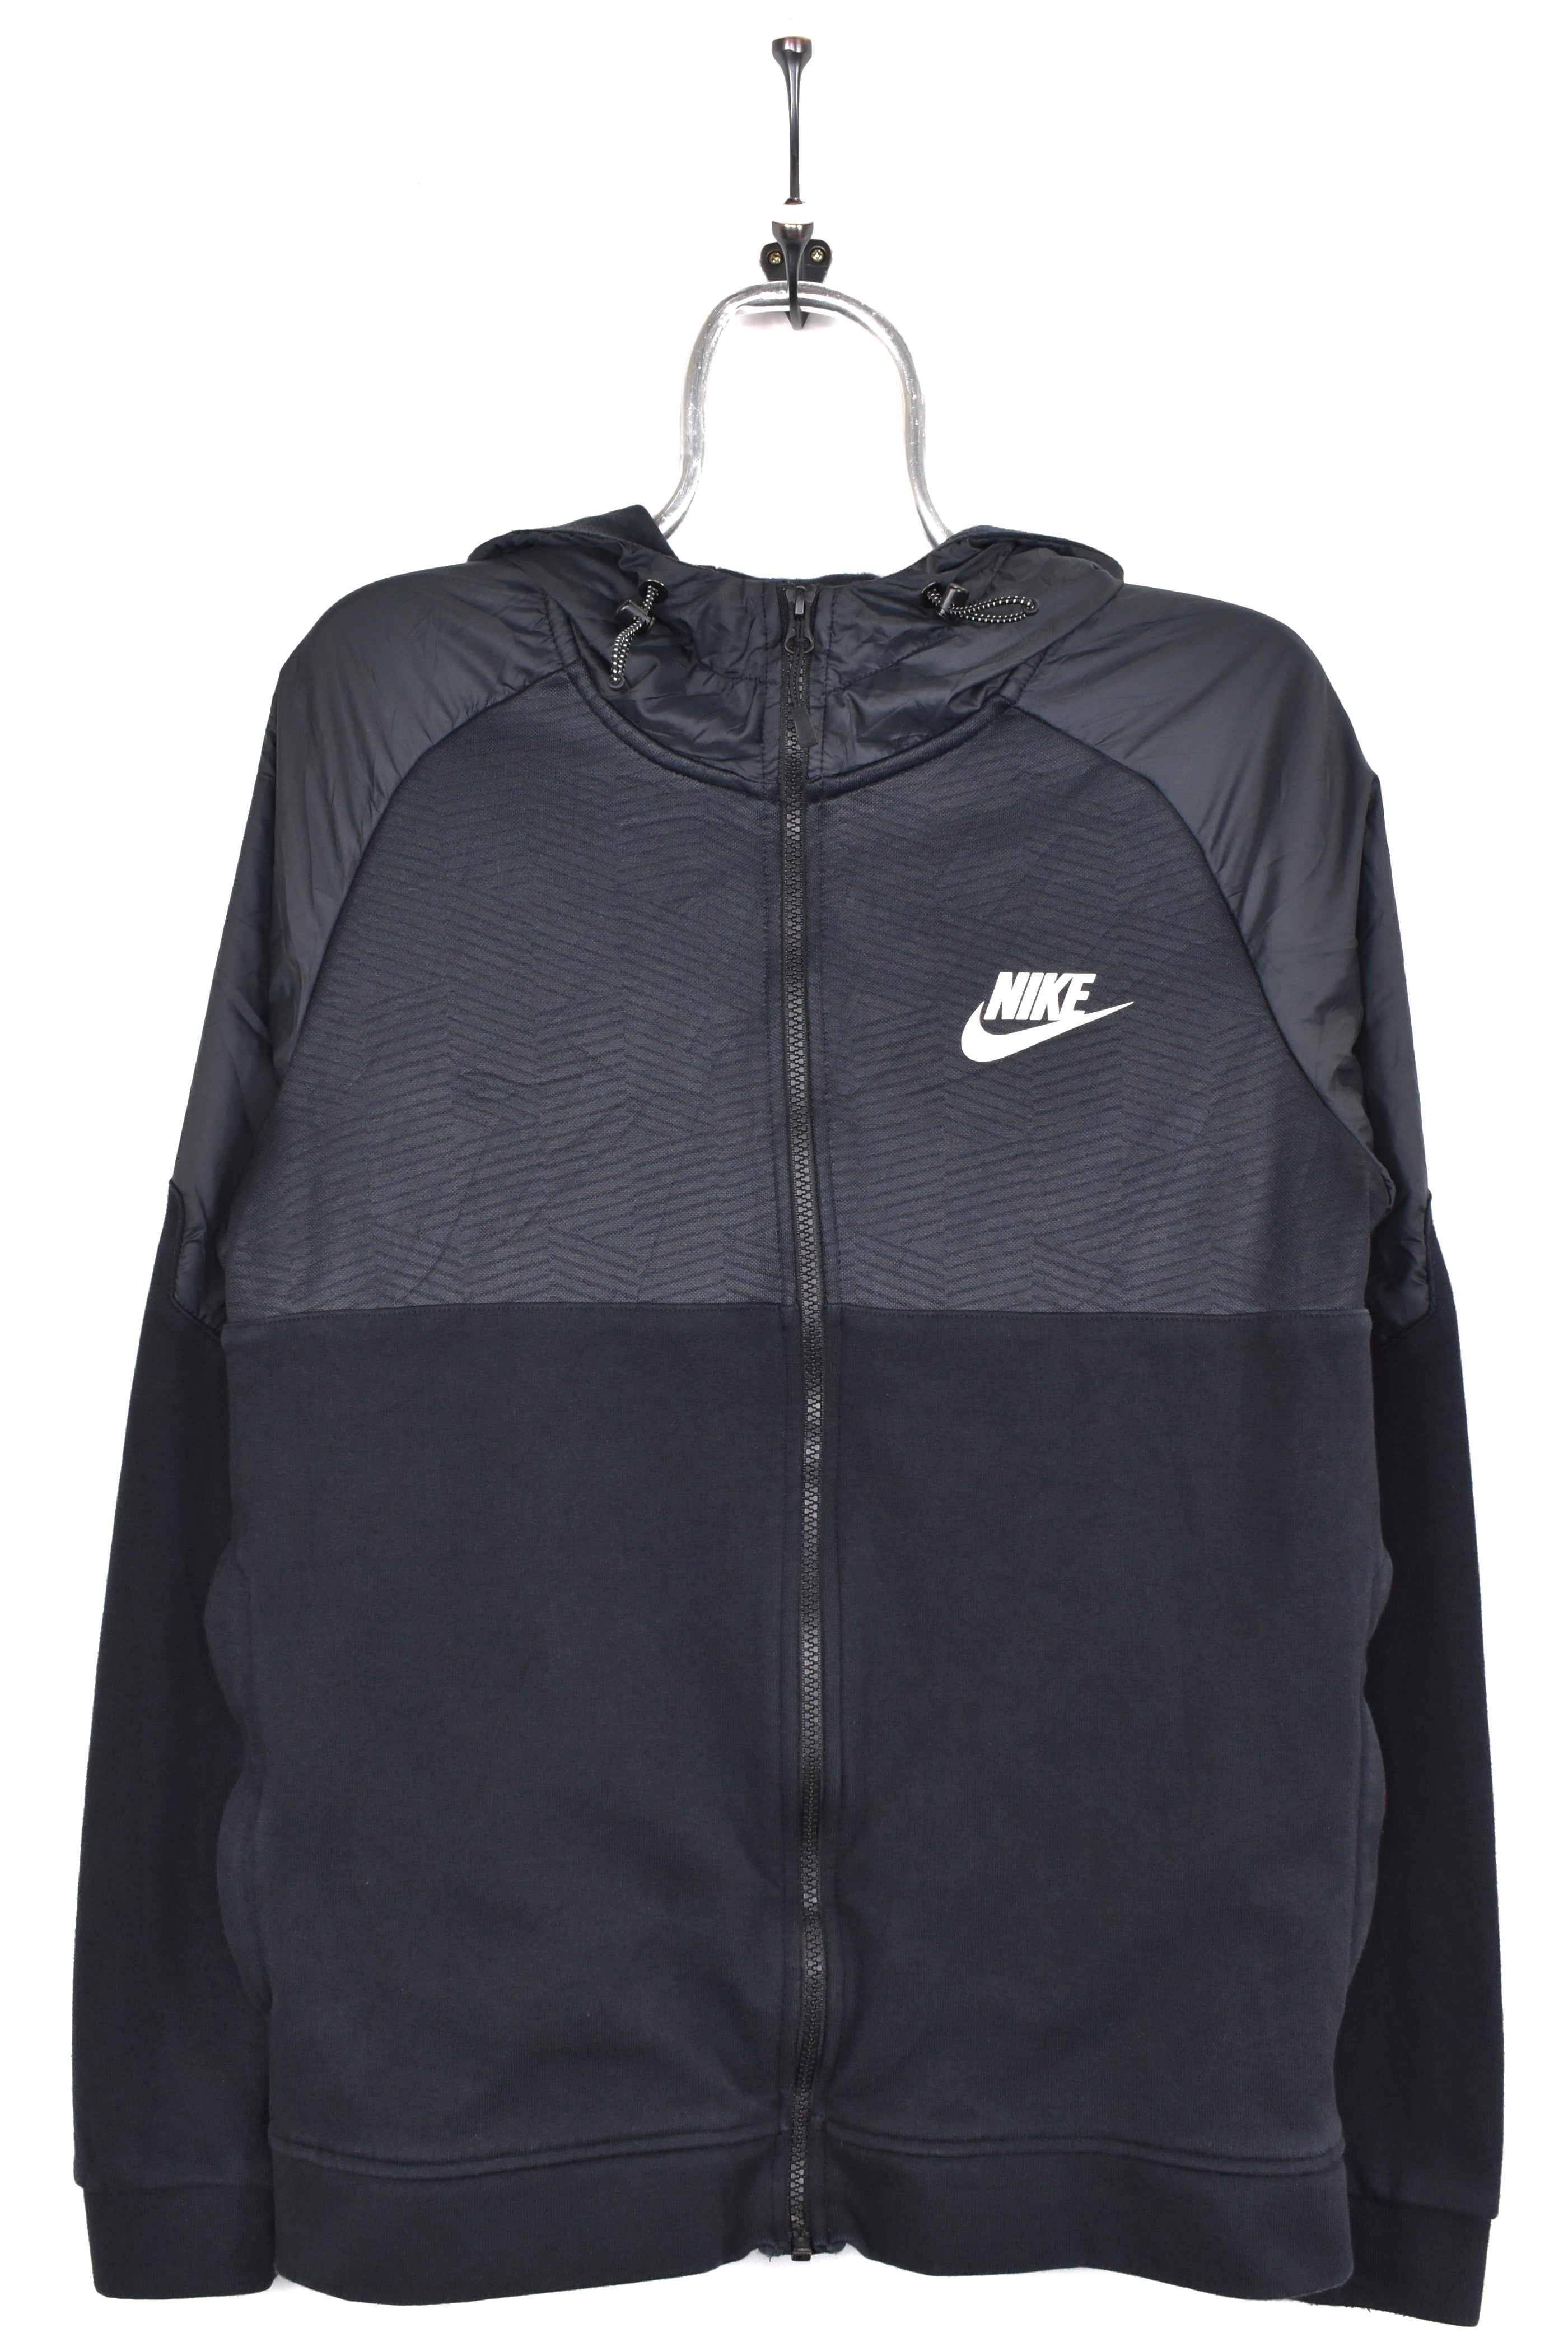 Vintage Nike hoodie, black heavy graphic sweatshirt - AU Medium NIKE